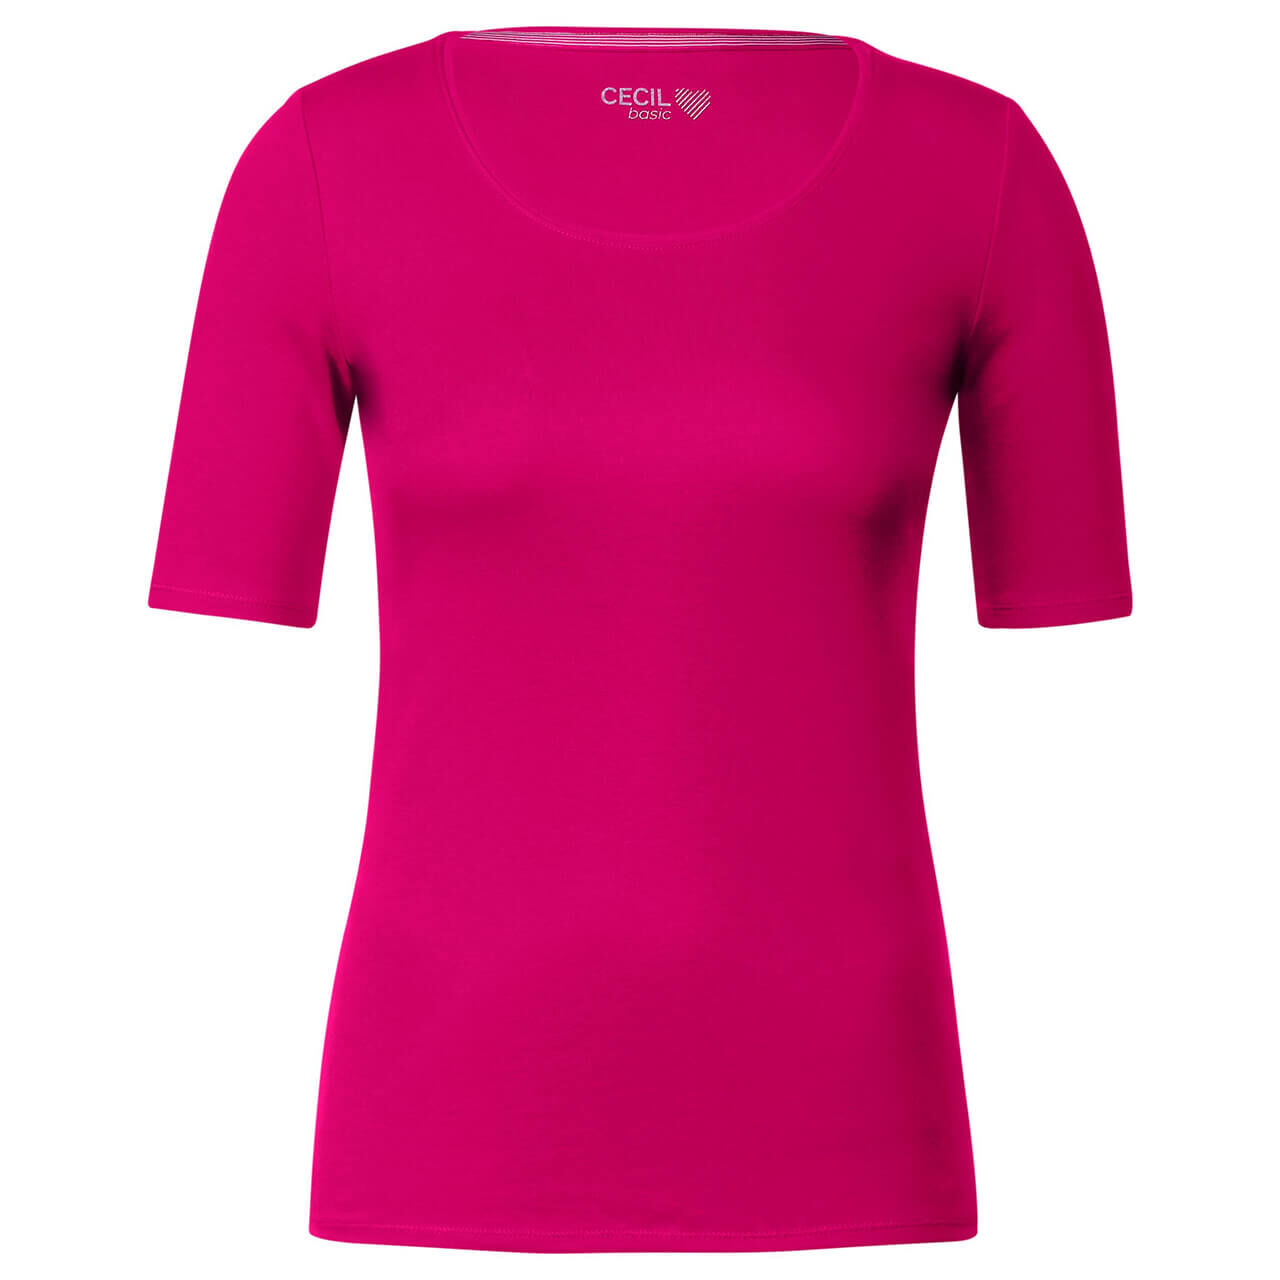 Cecil Damen T-Shirt Lena pink sorbet